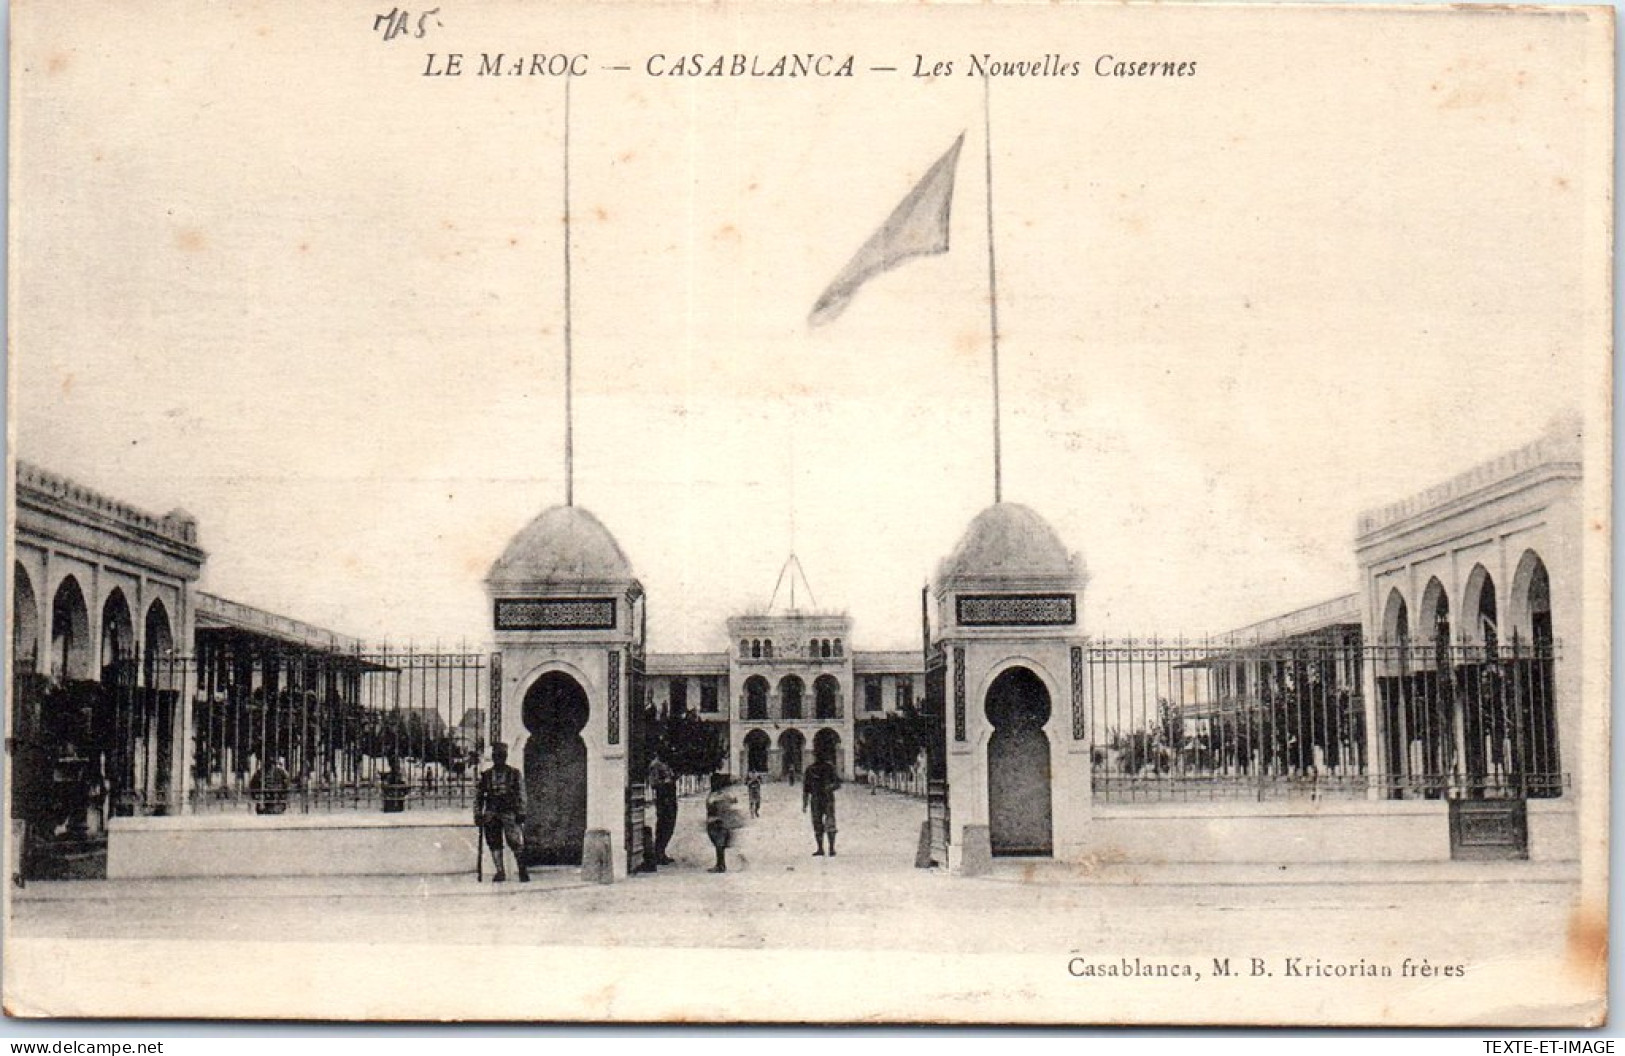 MAROC - CASABLANCA - Les Nouvelles Casernes. - Casablanca